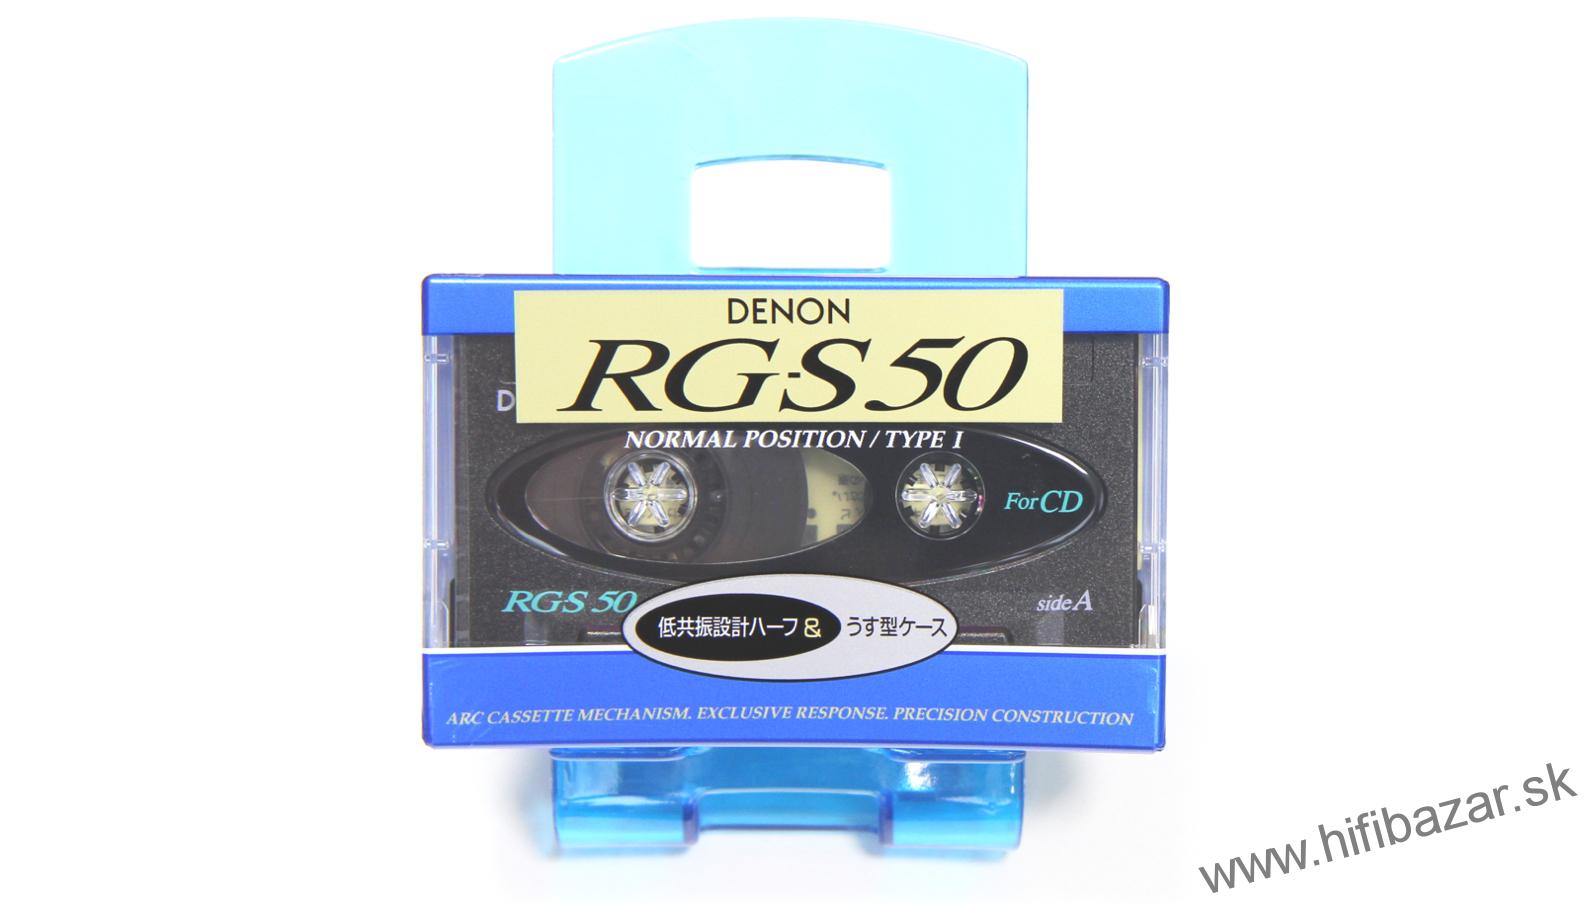 DENON RG-S50s Japan